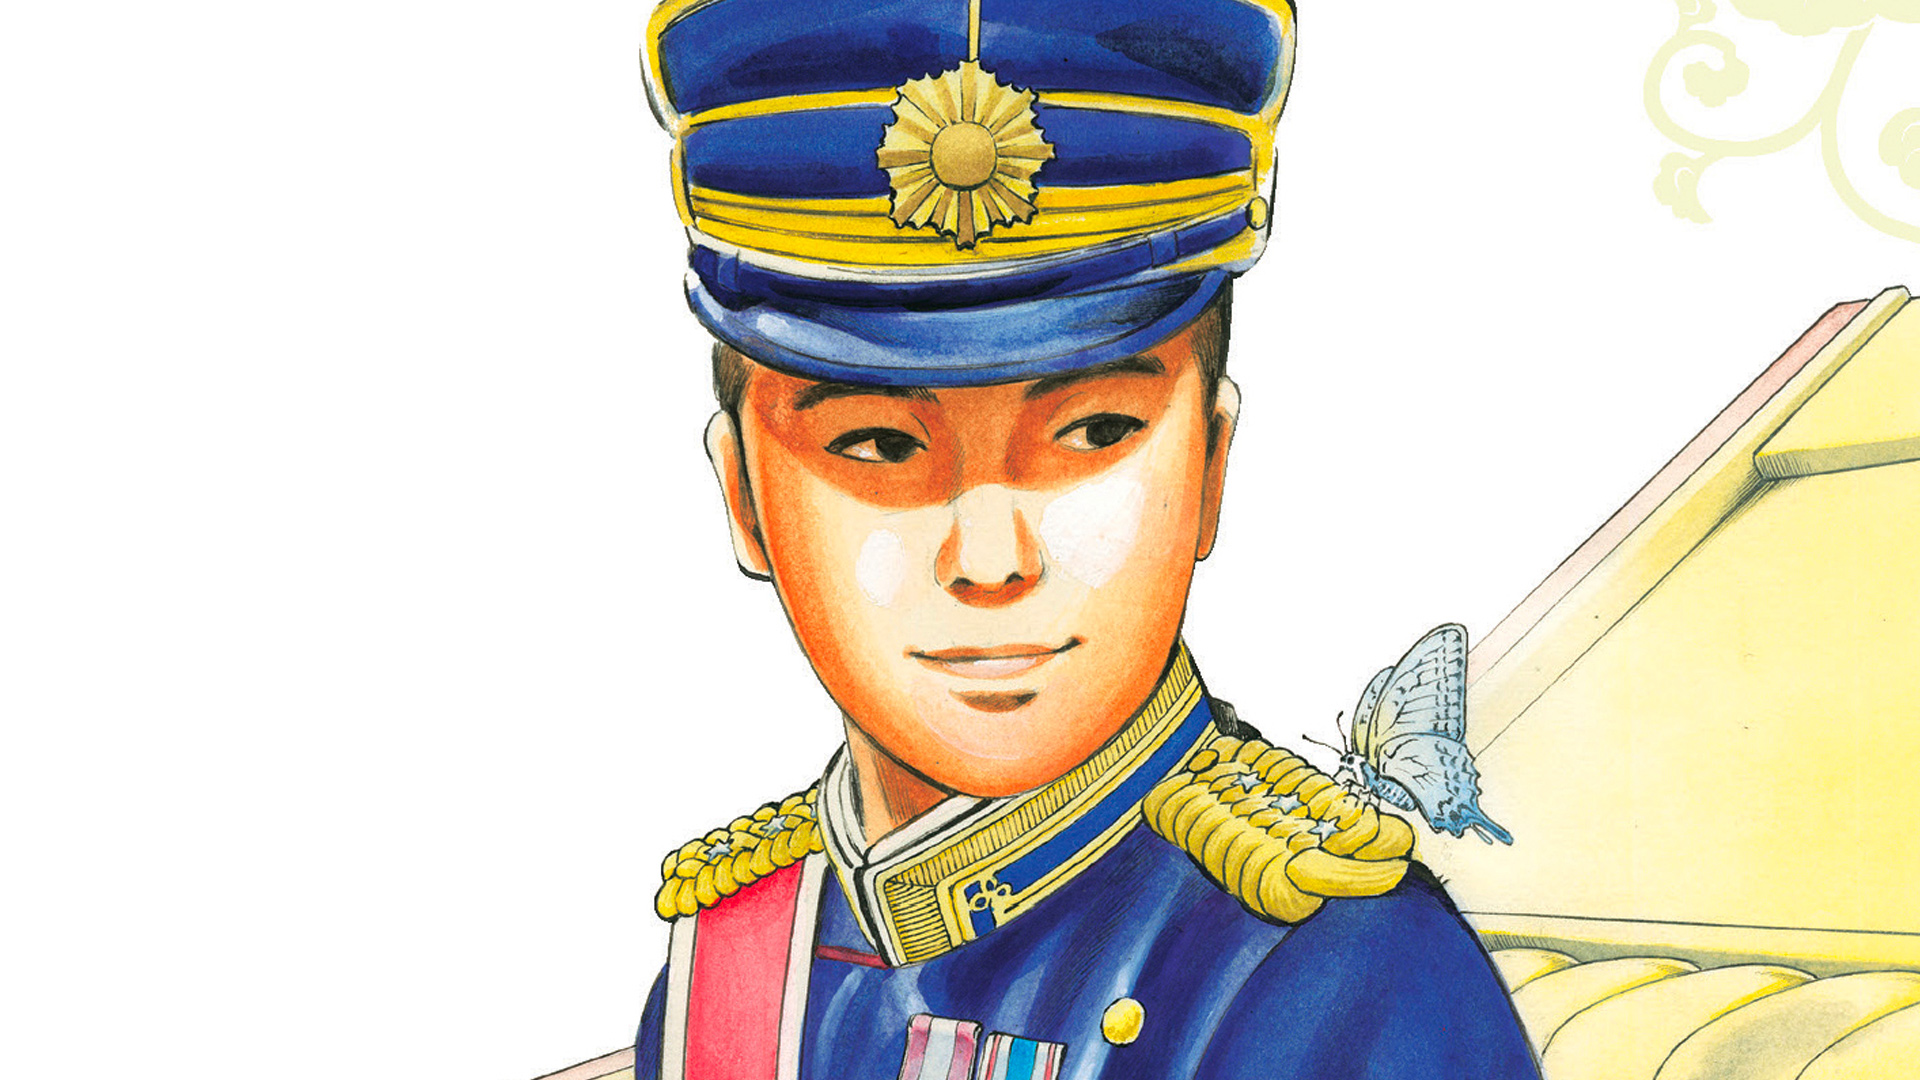 Imperatore del Giappone - Vol. 2 La storia dell'imperatore